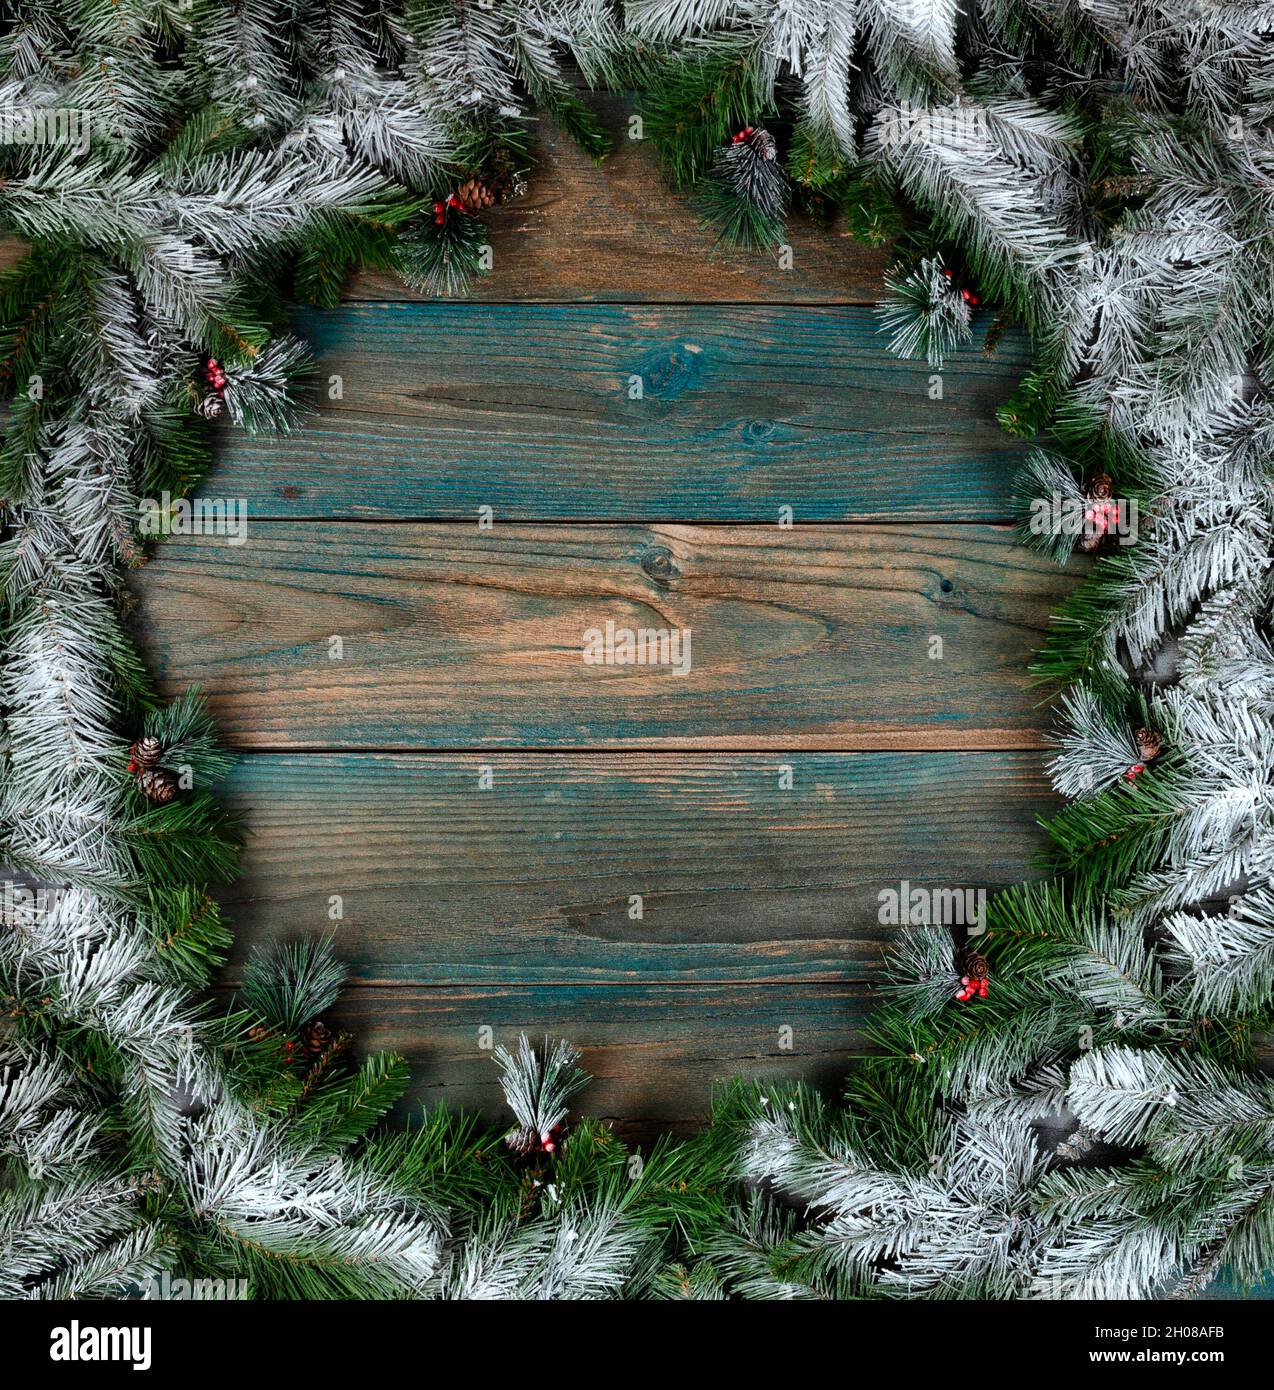 Vue en hauteur d'une couronne couverte de neige avec de petits cônes de pin dans la bordure circulaire sur des planches de bois vieillies bleues pour les vacances d'hiver de Noël ou Banque D'Images